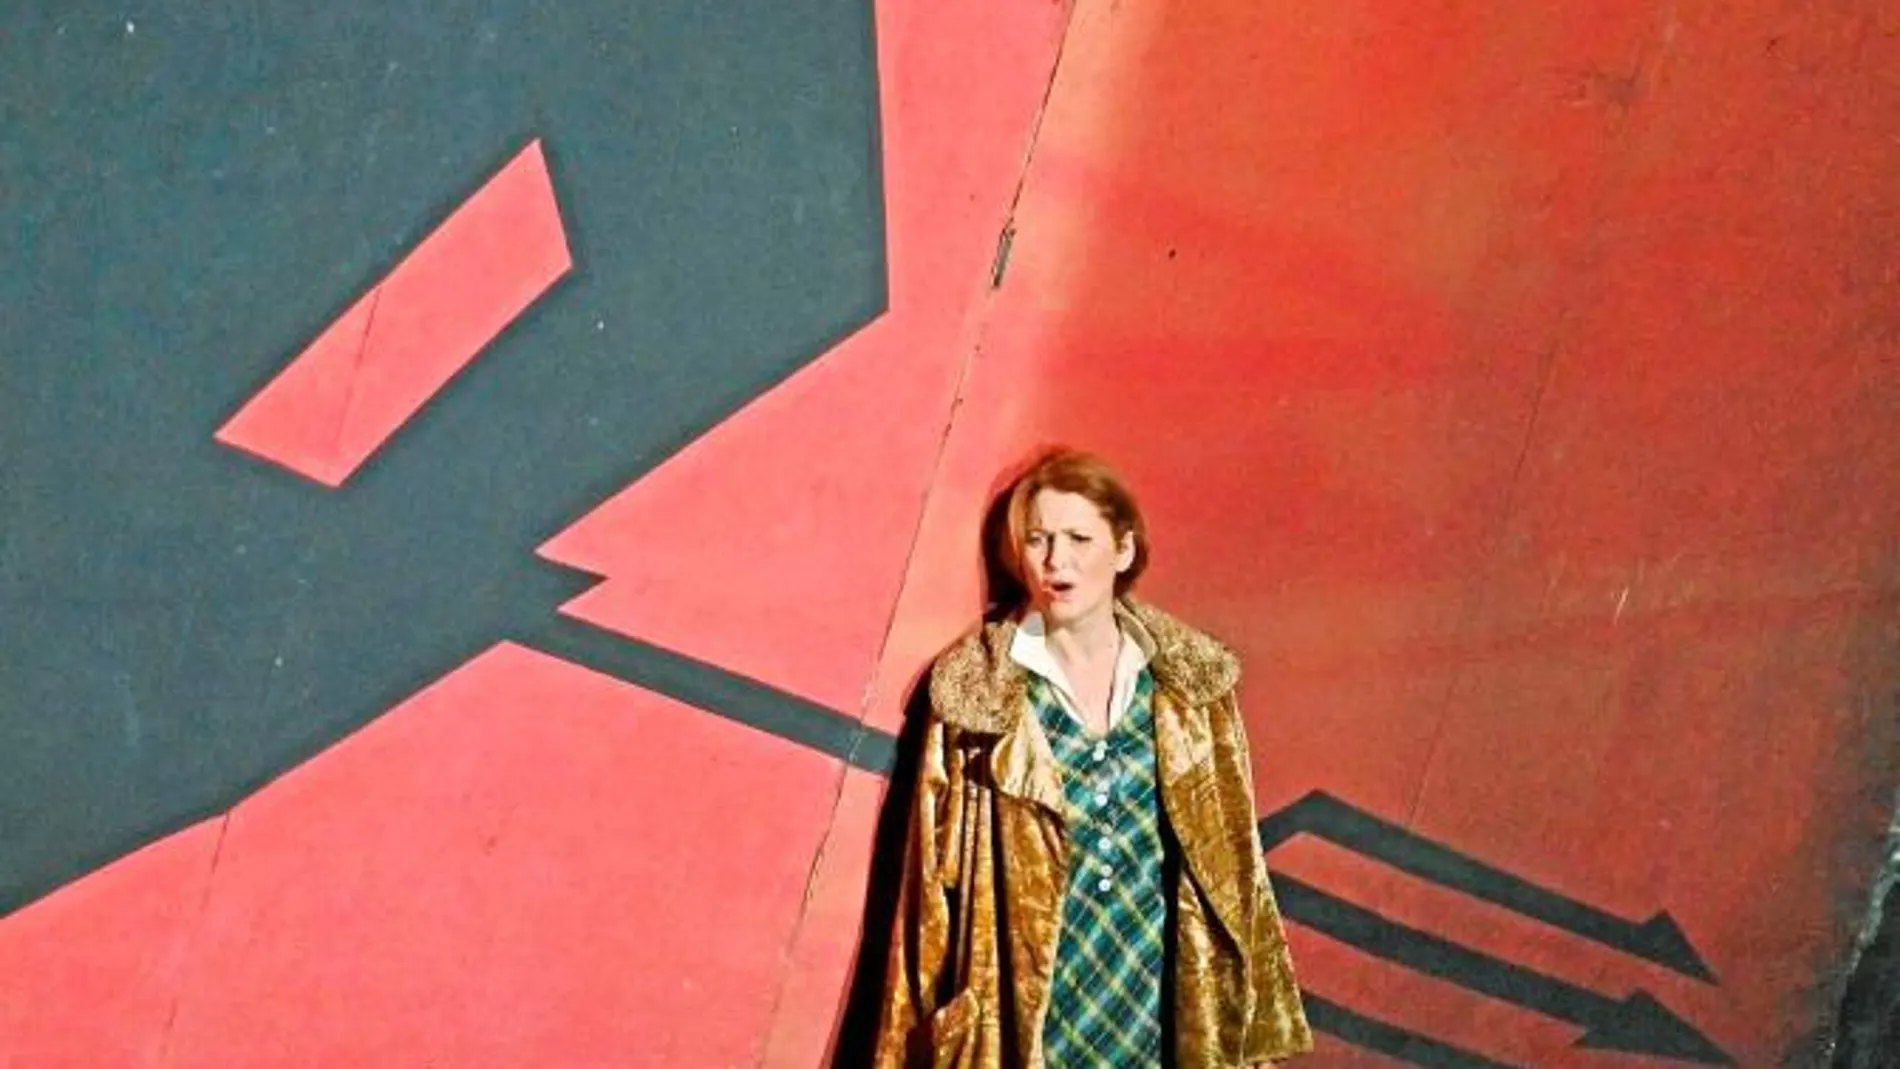 La soprano lírica Patricia Racette interpreta a la asolada Kàtia Kabànova que buscará su propia libertad en un entorno opresivo, con una puesta en escena expresionista